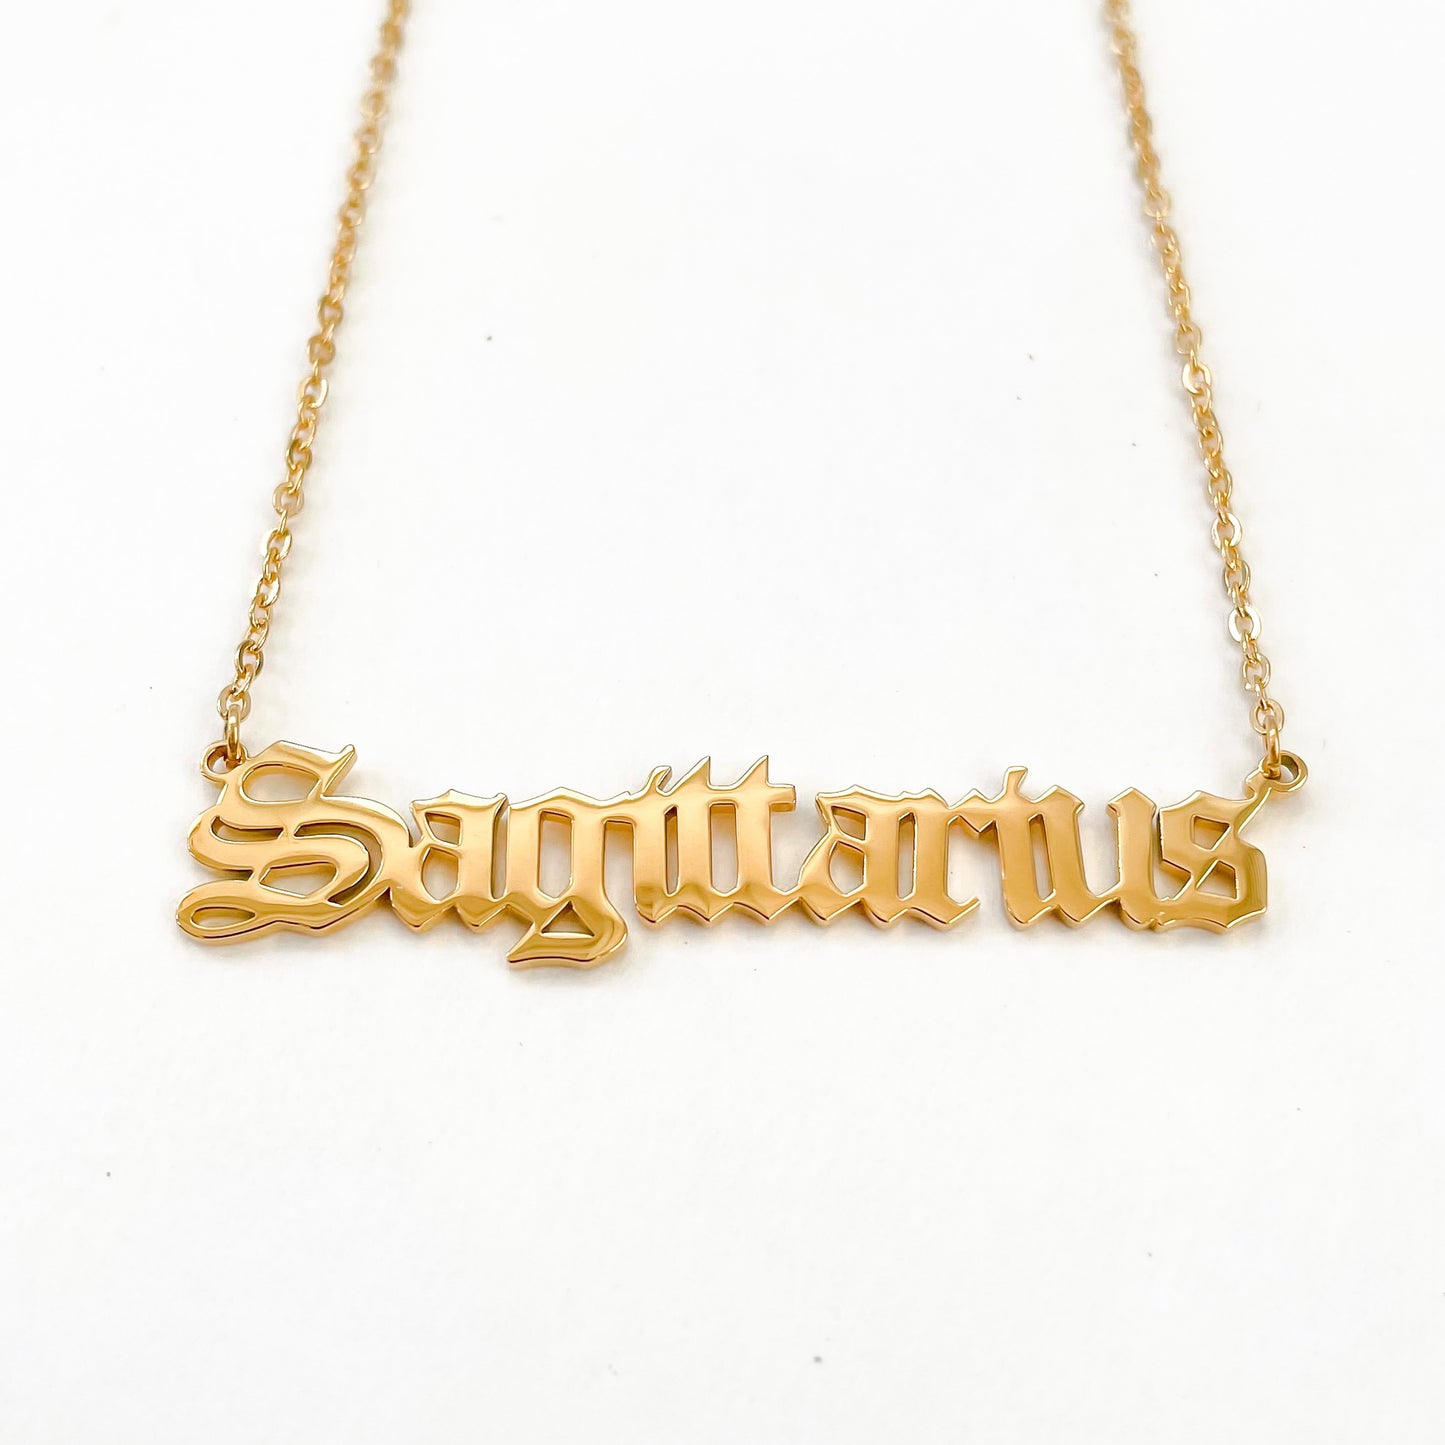 Sagittarius Necklace in Gold